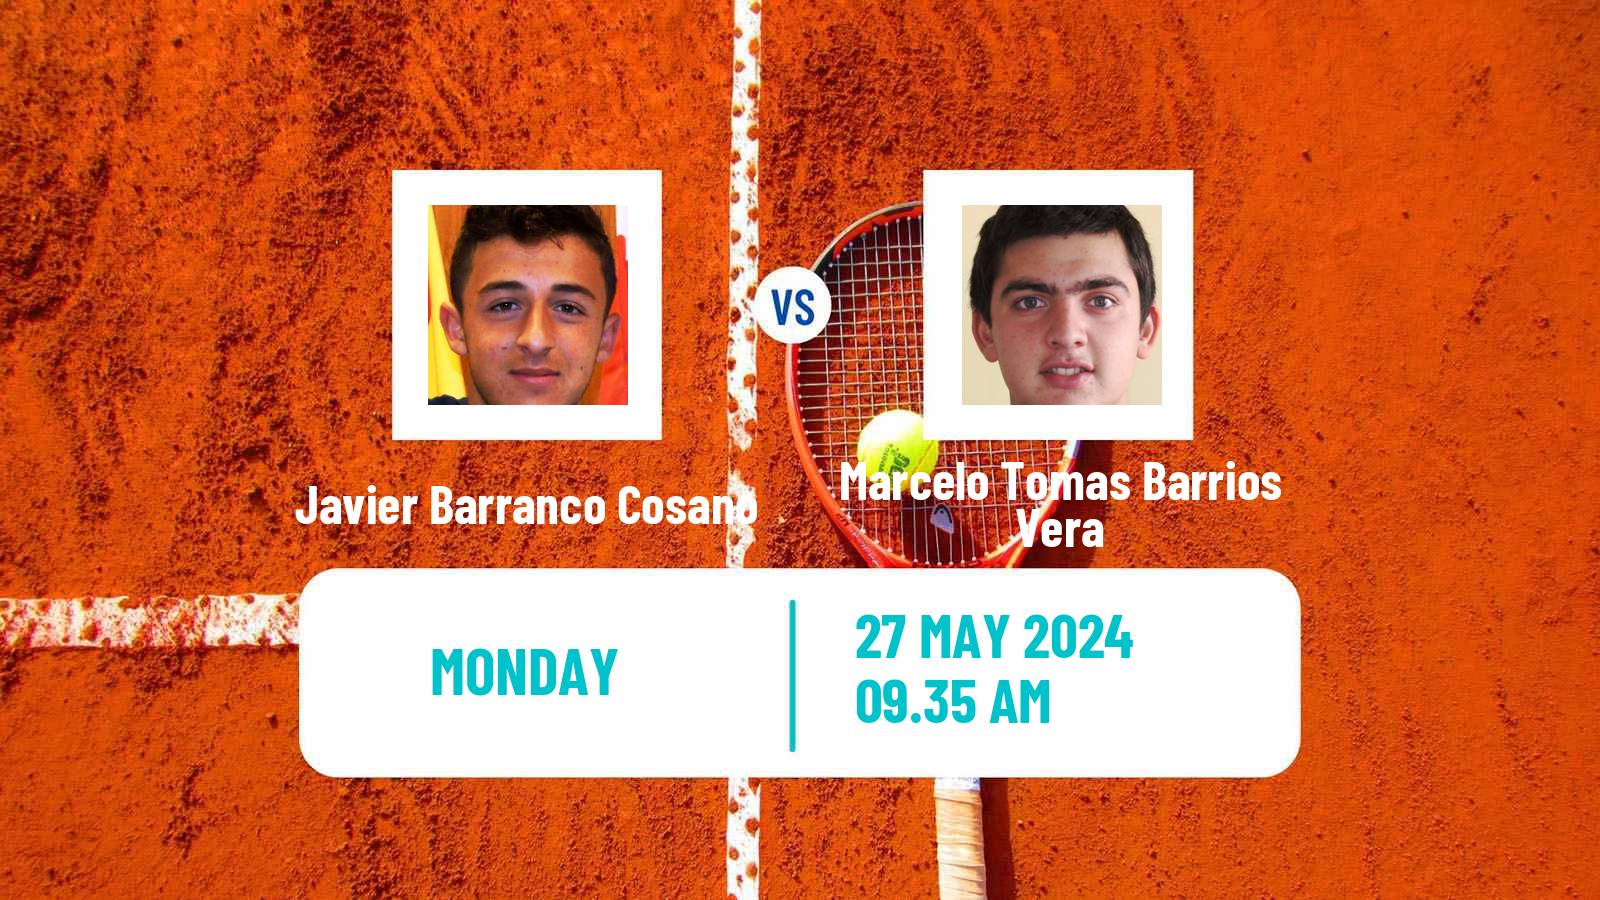 Tennis Vicenza Challenger Men Javier Barranco Cosano - Marcelo Tomas Barrios Vera